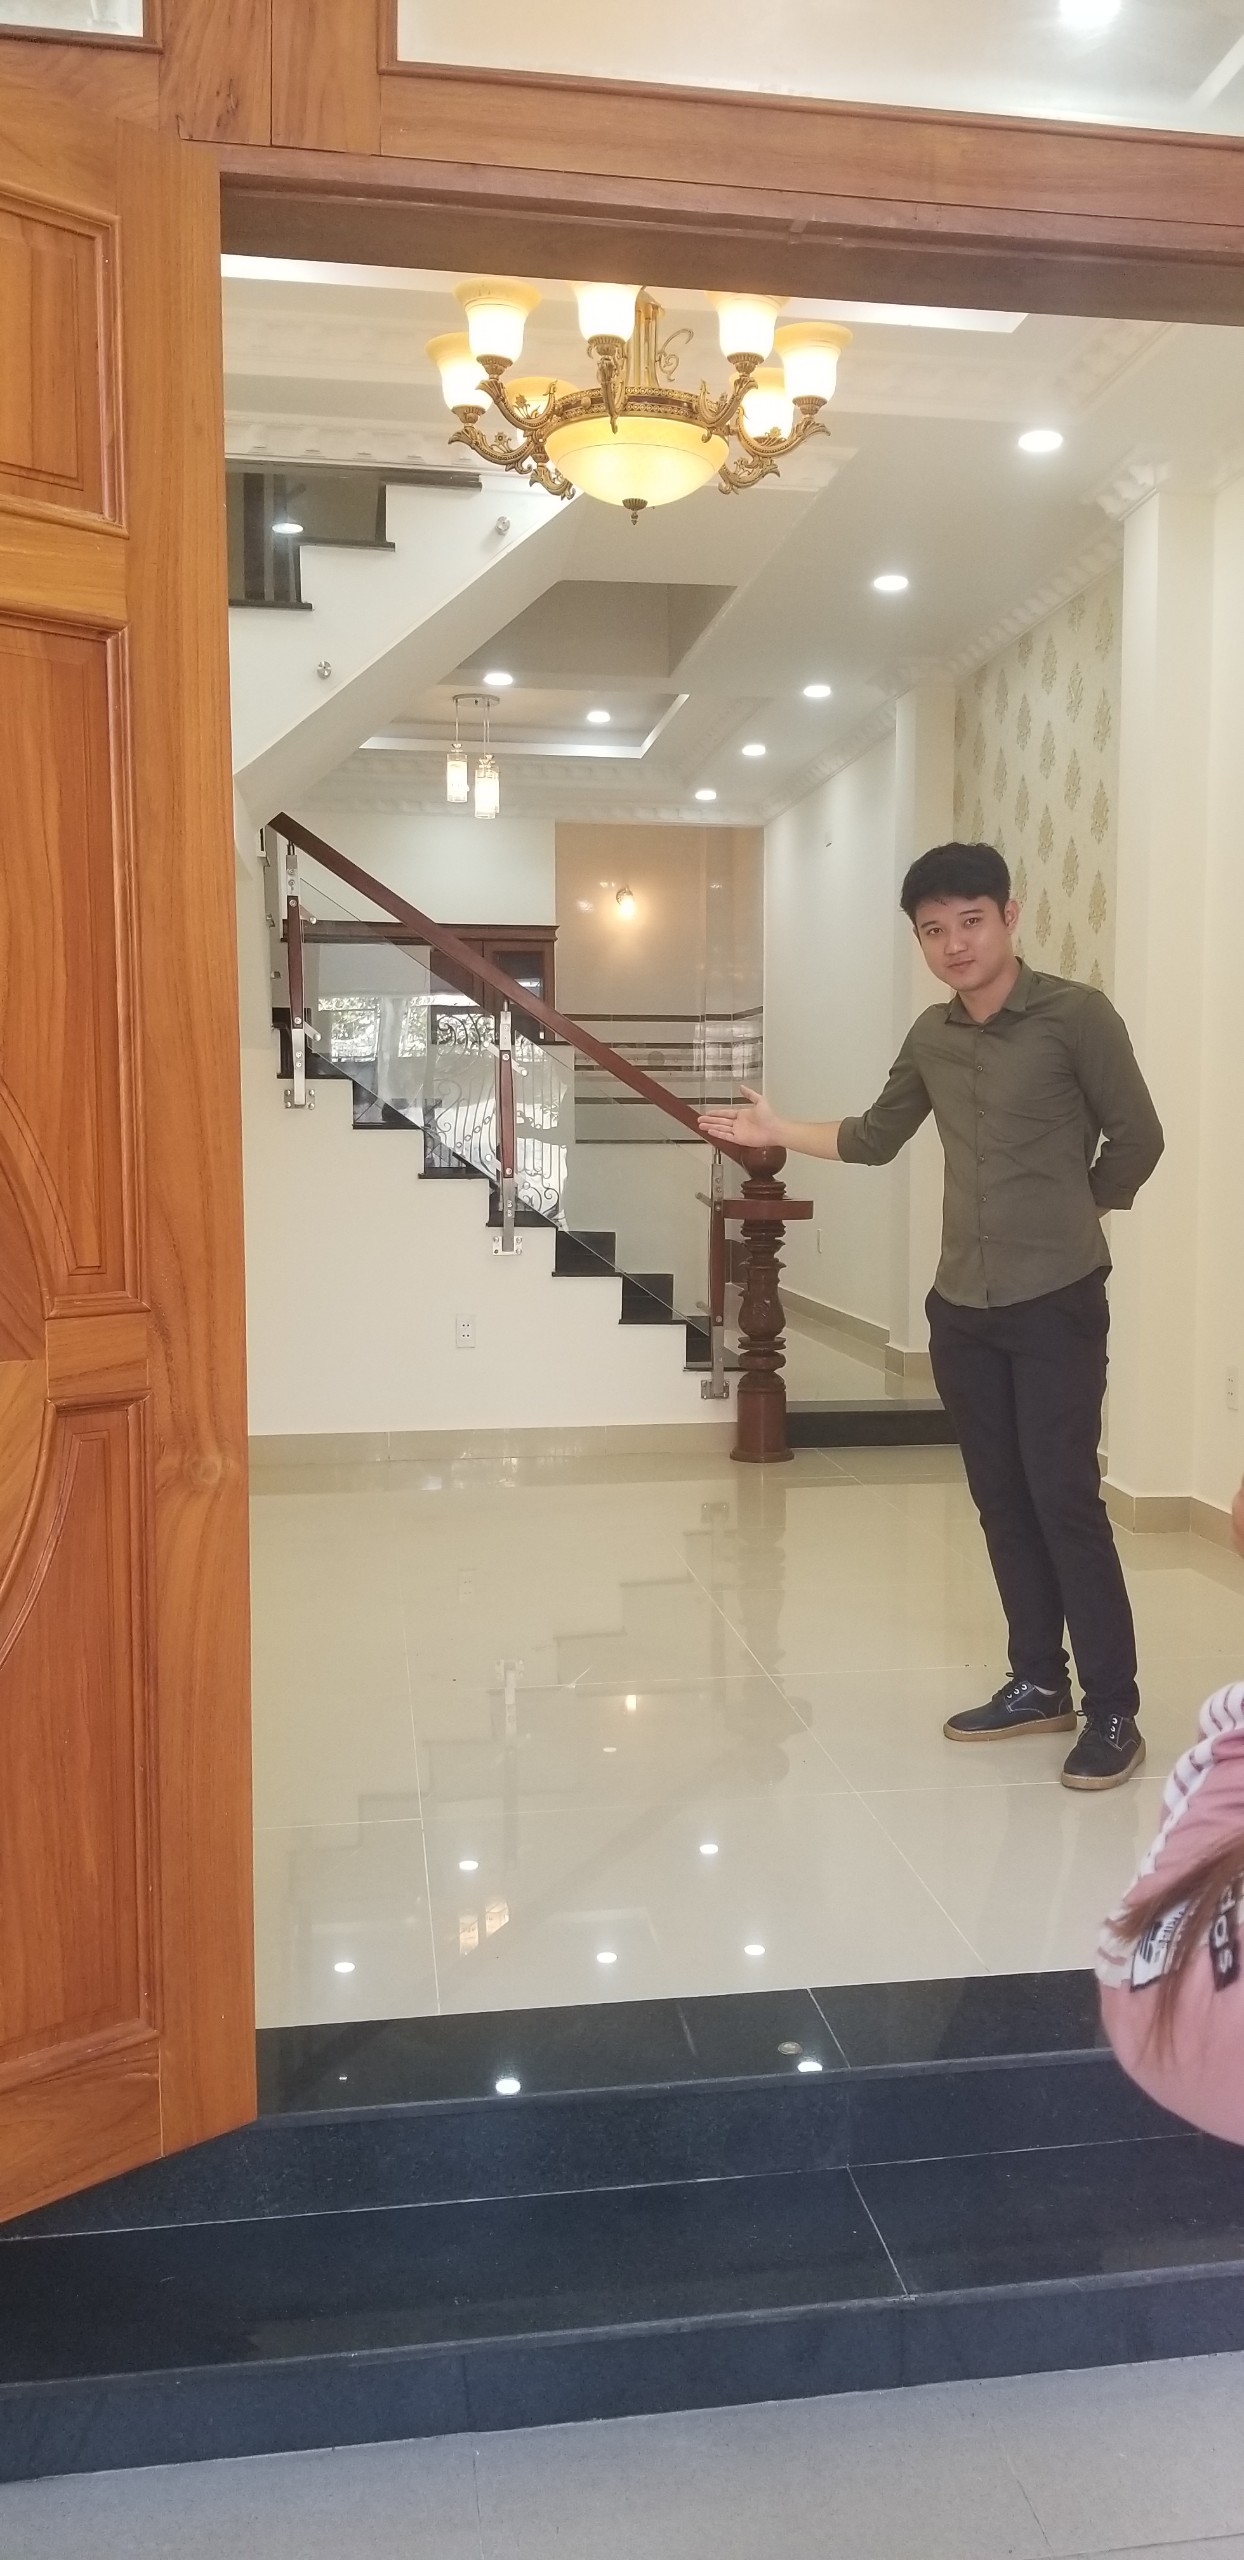 Bán gấp nhà đẹp giá rẻ đường số 9 phường Linh Chiểu trung tâm quận Thủ Đức giá 5ty5